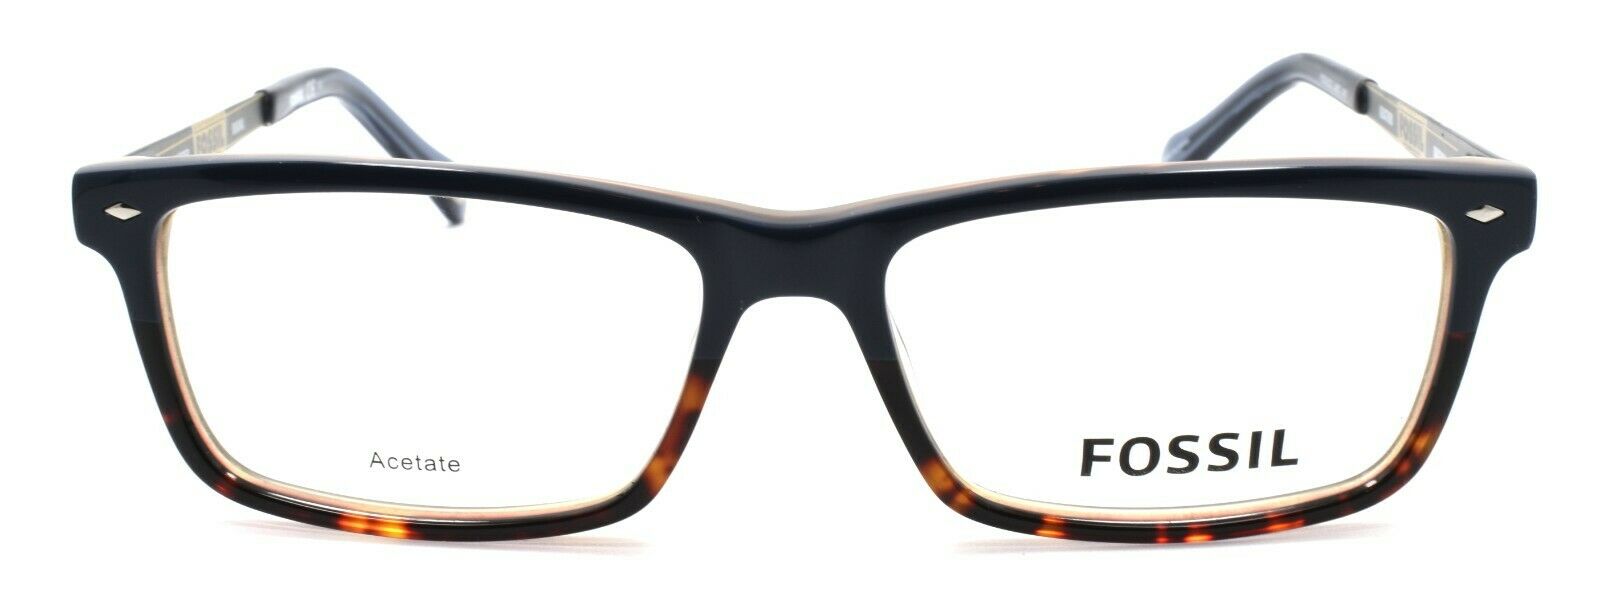 2-Fossil FOS 6032 UHD Men's Eyeglasses Frames 54-16-145 Blue / Havana + CASE-716737651841-IKSpecs